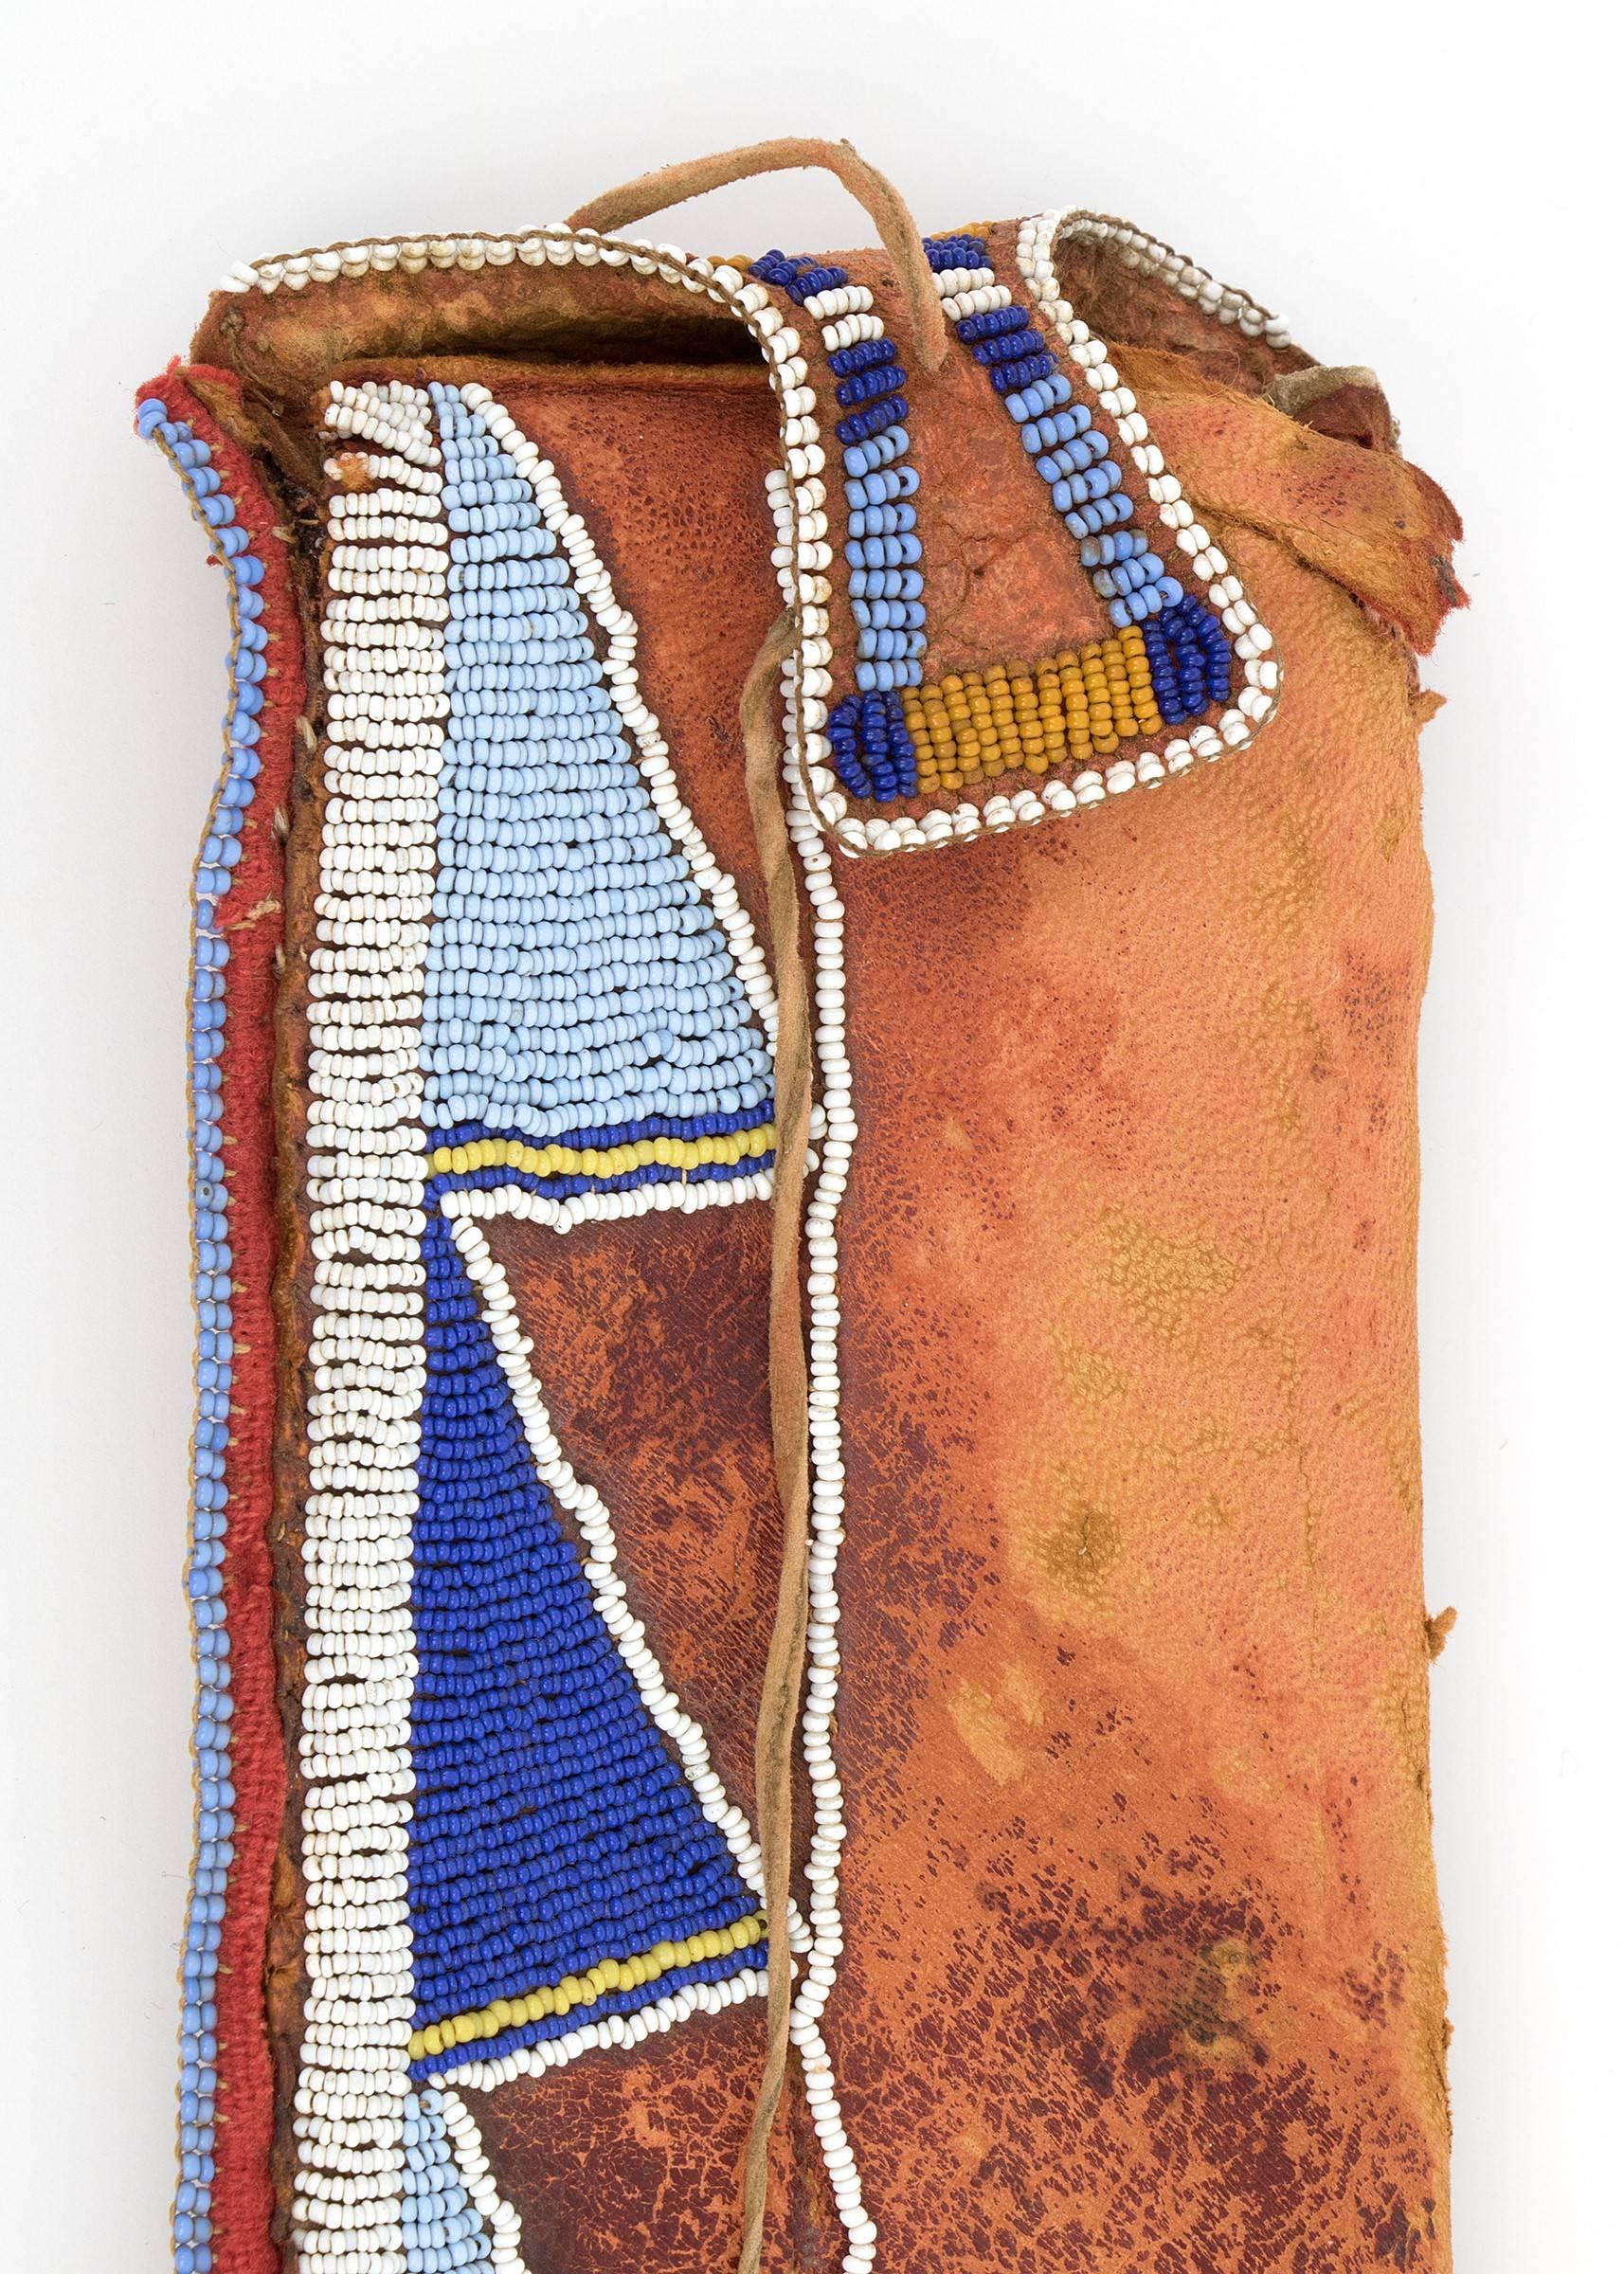 Eine Messerscheide aus der klassischen Periode (Prä-Reservierungs-Ära), die um 1870 von einem Künstler der Crow (Plains-Indianer/Indianer) geschaffen wurde.  Hergestellt aus gegerbtem Eingeborenenleder und teilweise mit blauen, weißen und gelben